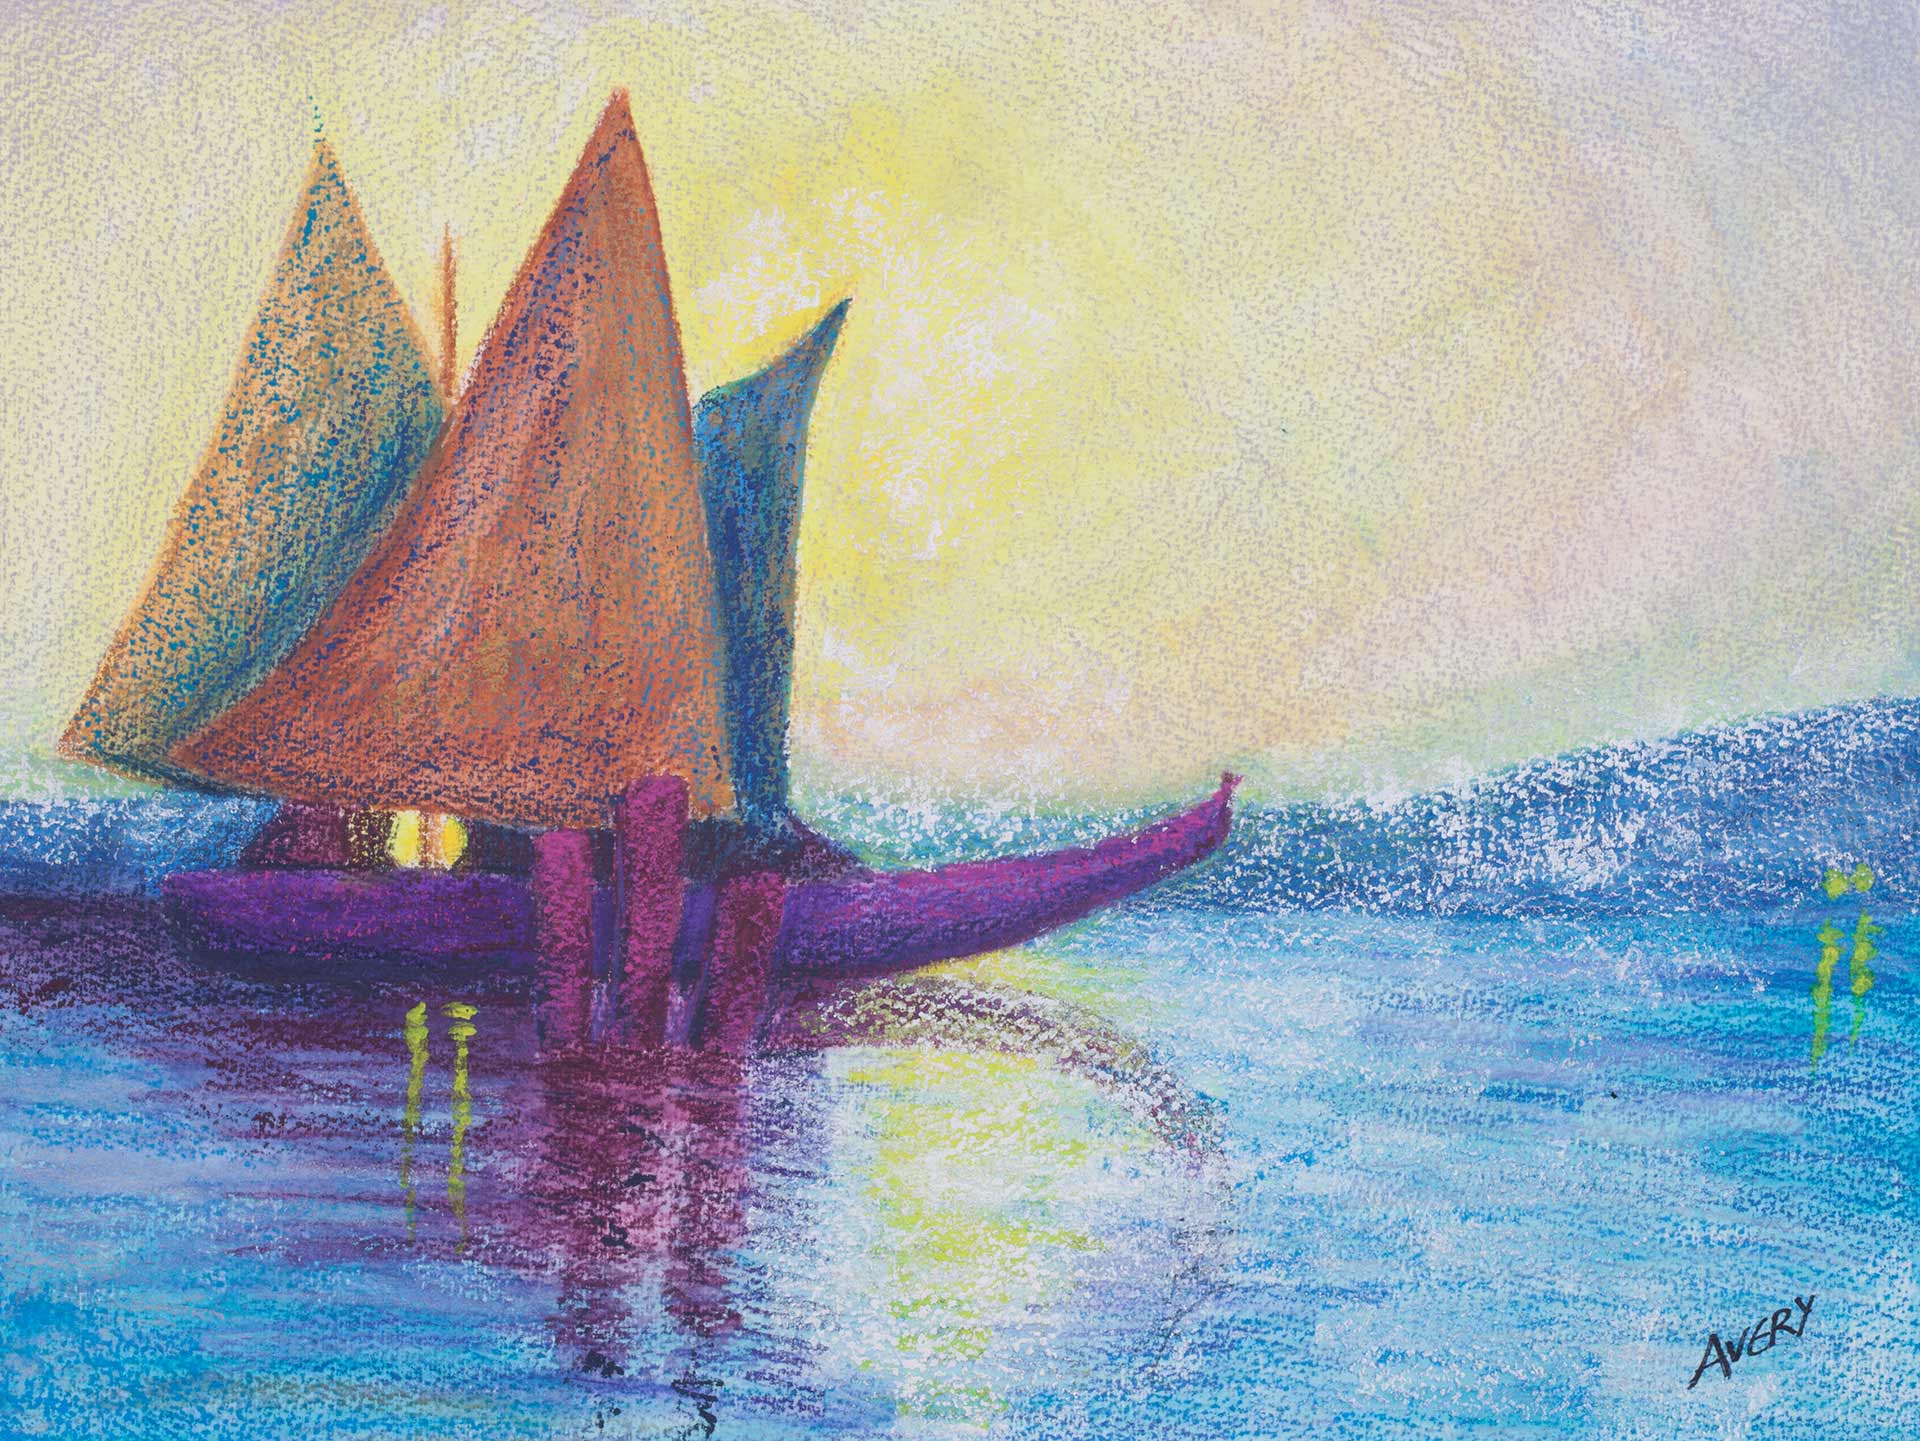 Lauren Avery Hutton |Riccitelli Boats, watercolor, 16x12, 2003